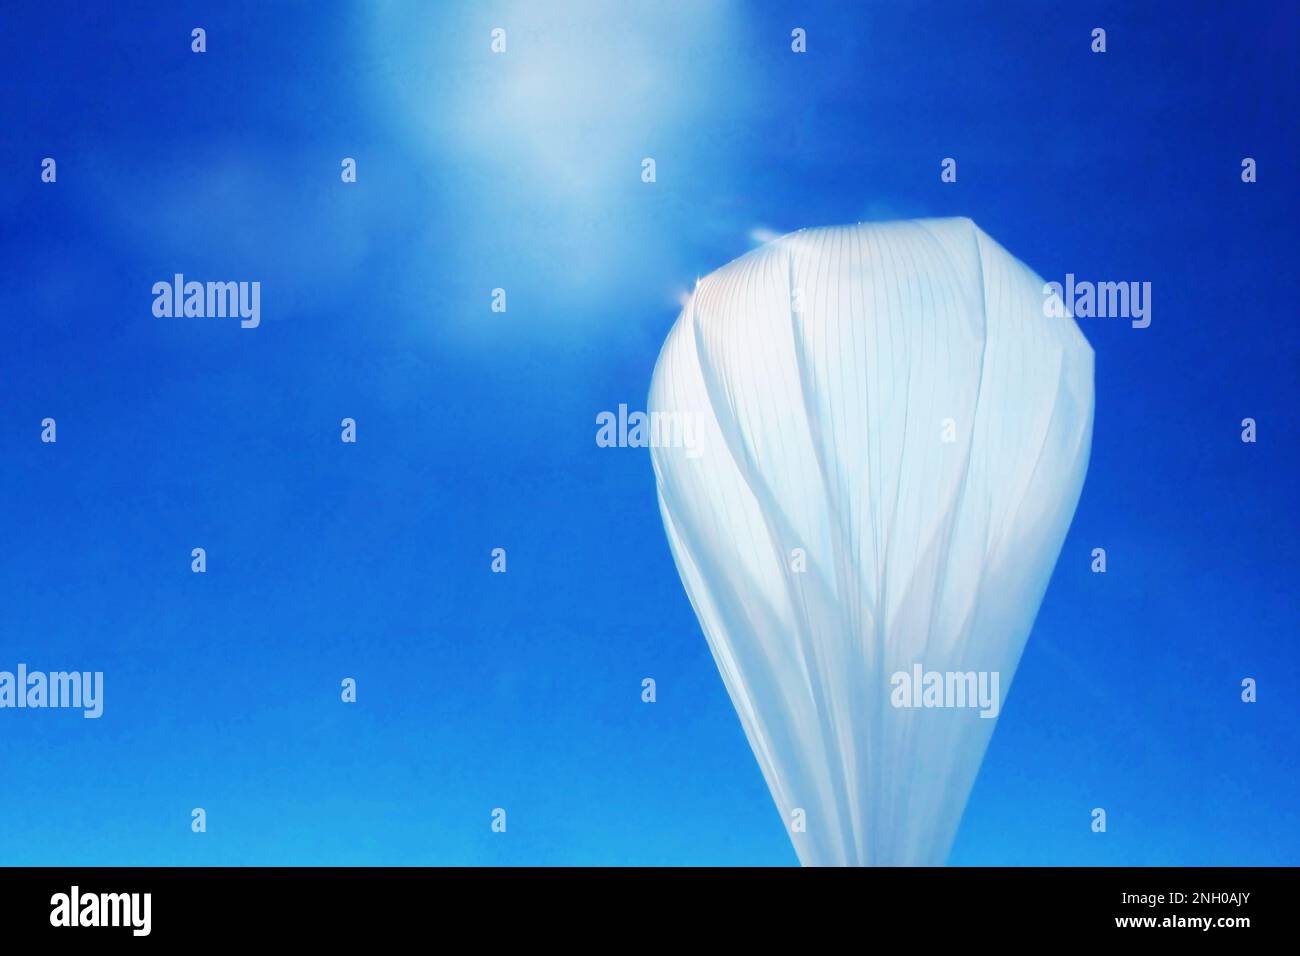 Ballon de reconnaissance dans le ciel. Éléments de cette image fournis par la NASA. Photo de haute qualité Banque D'Images